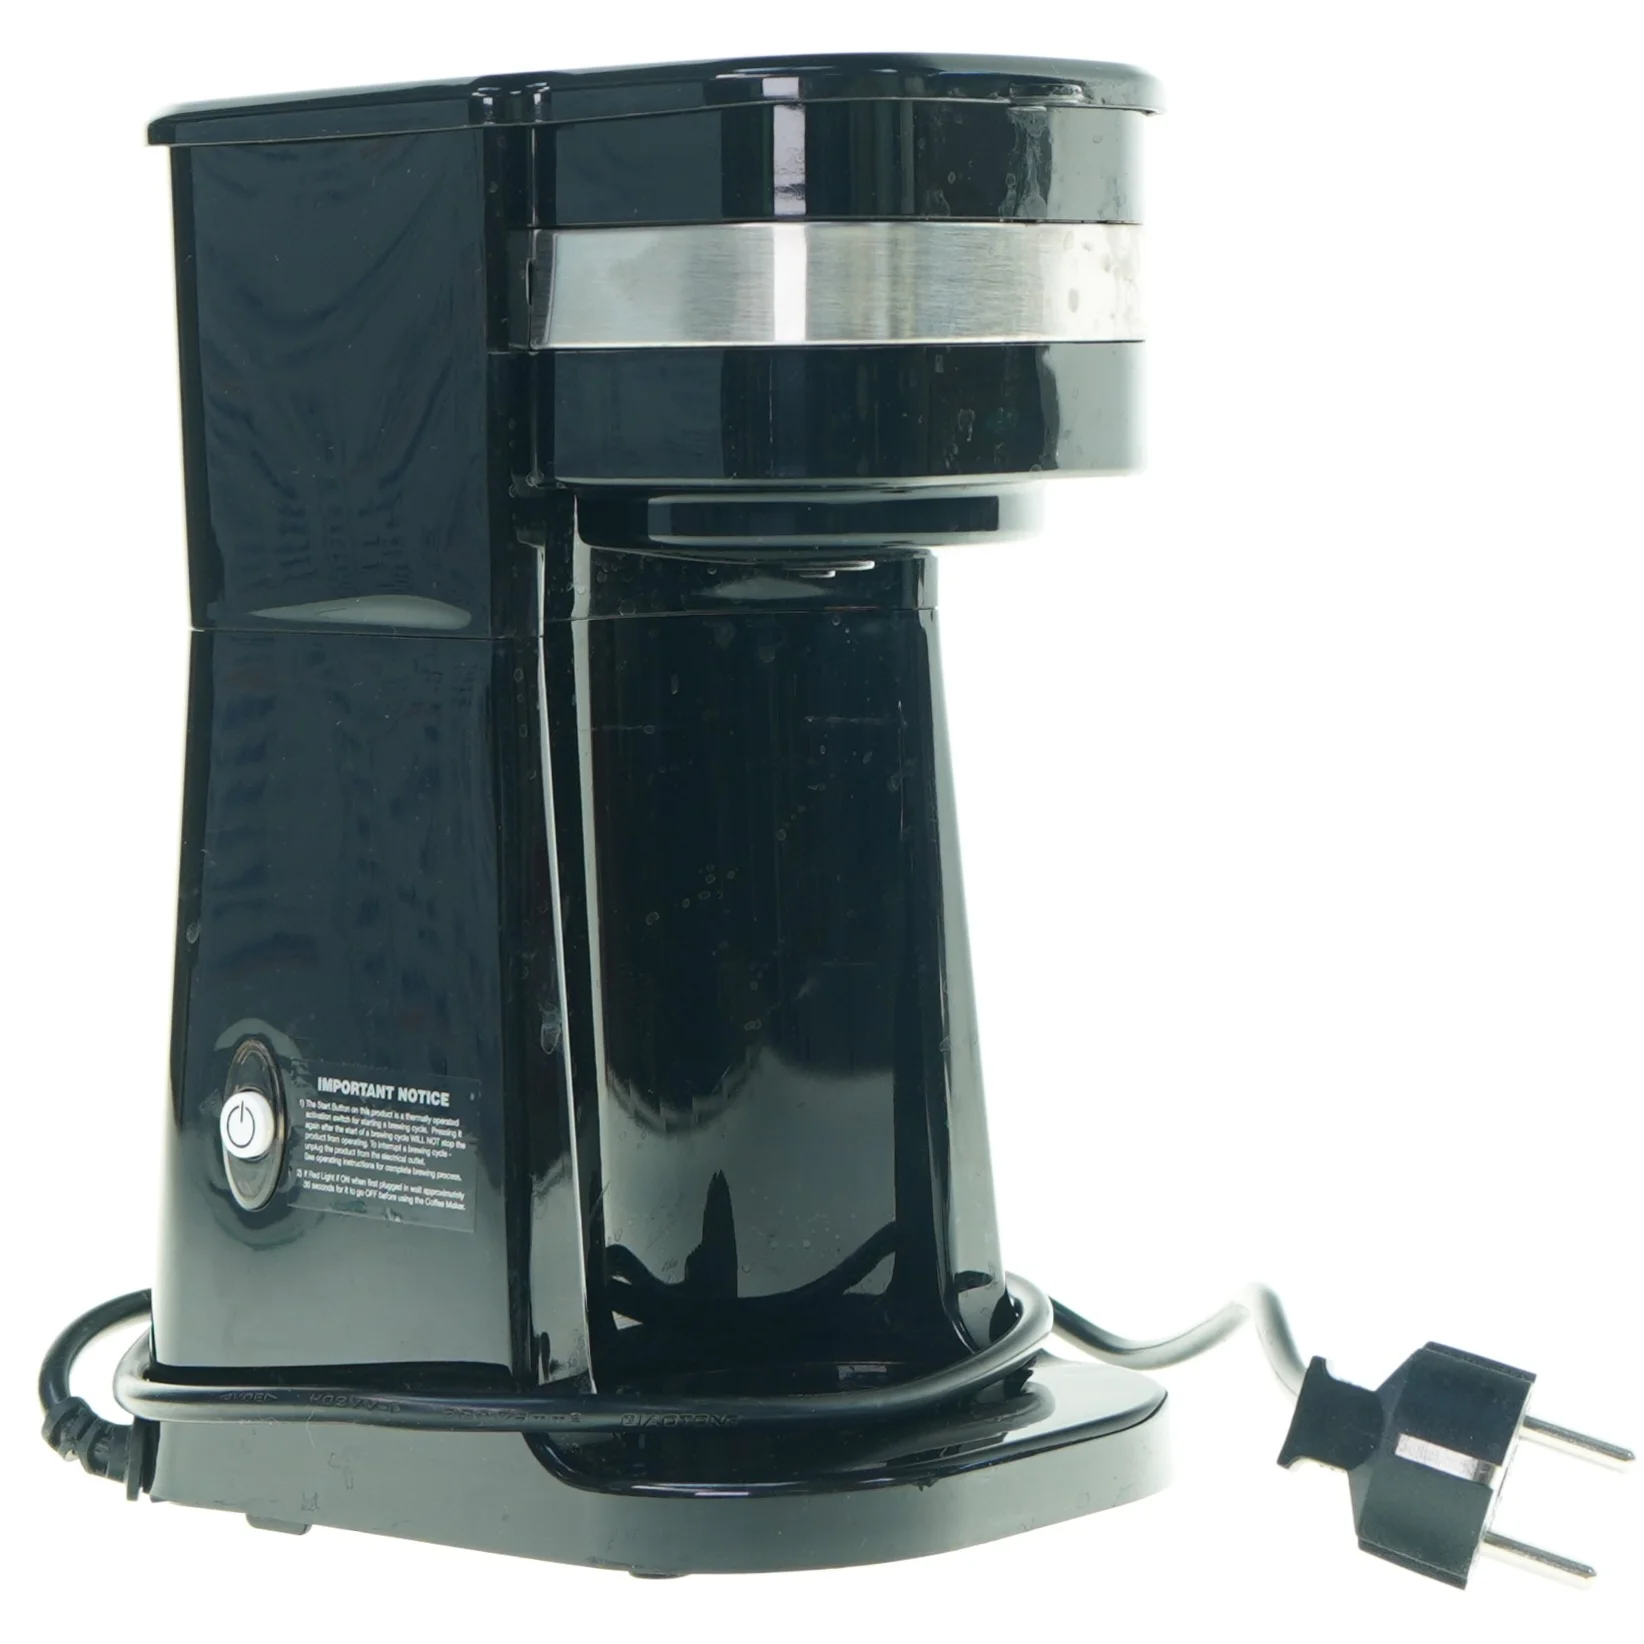 Helt vildt Vædde våben Onecup Kaffemaskine fra Epiq (str. 24 x 16 x 13 cm) | Orderly.shop